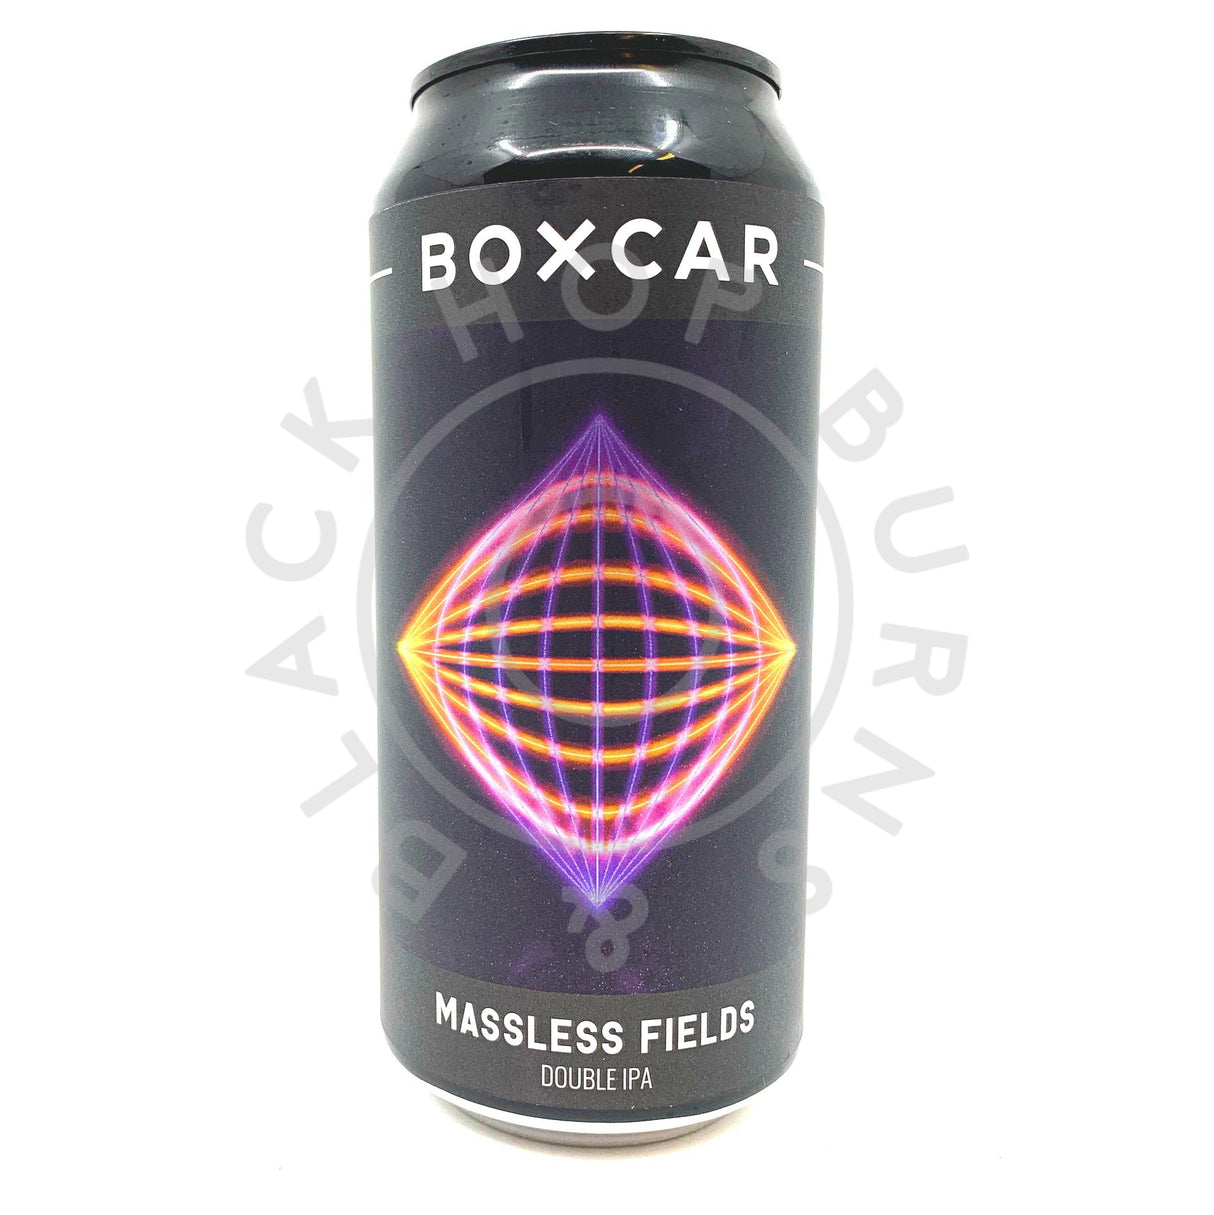 Boxcar Massless Fields DIPA 8.5% (440ml can)-Hop Burns & Black